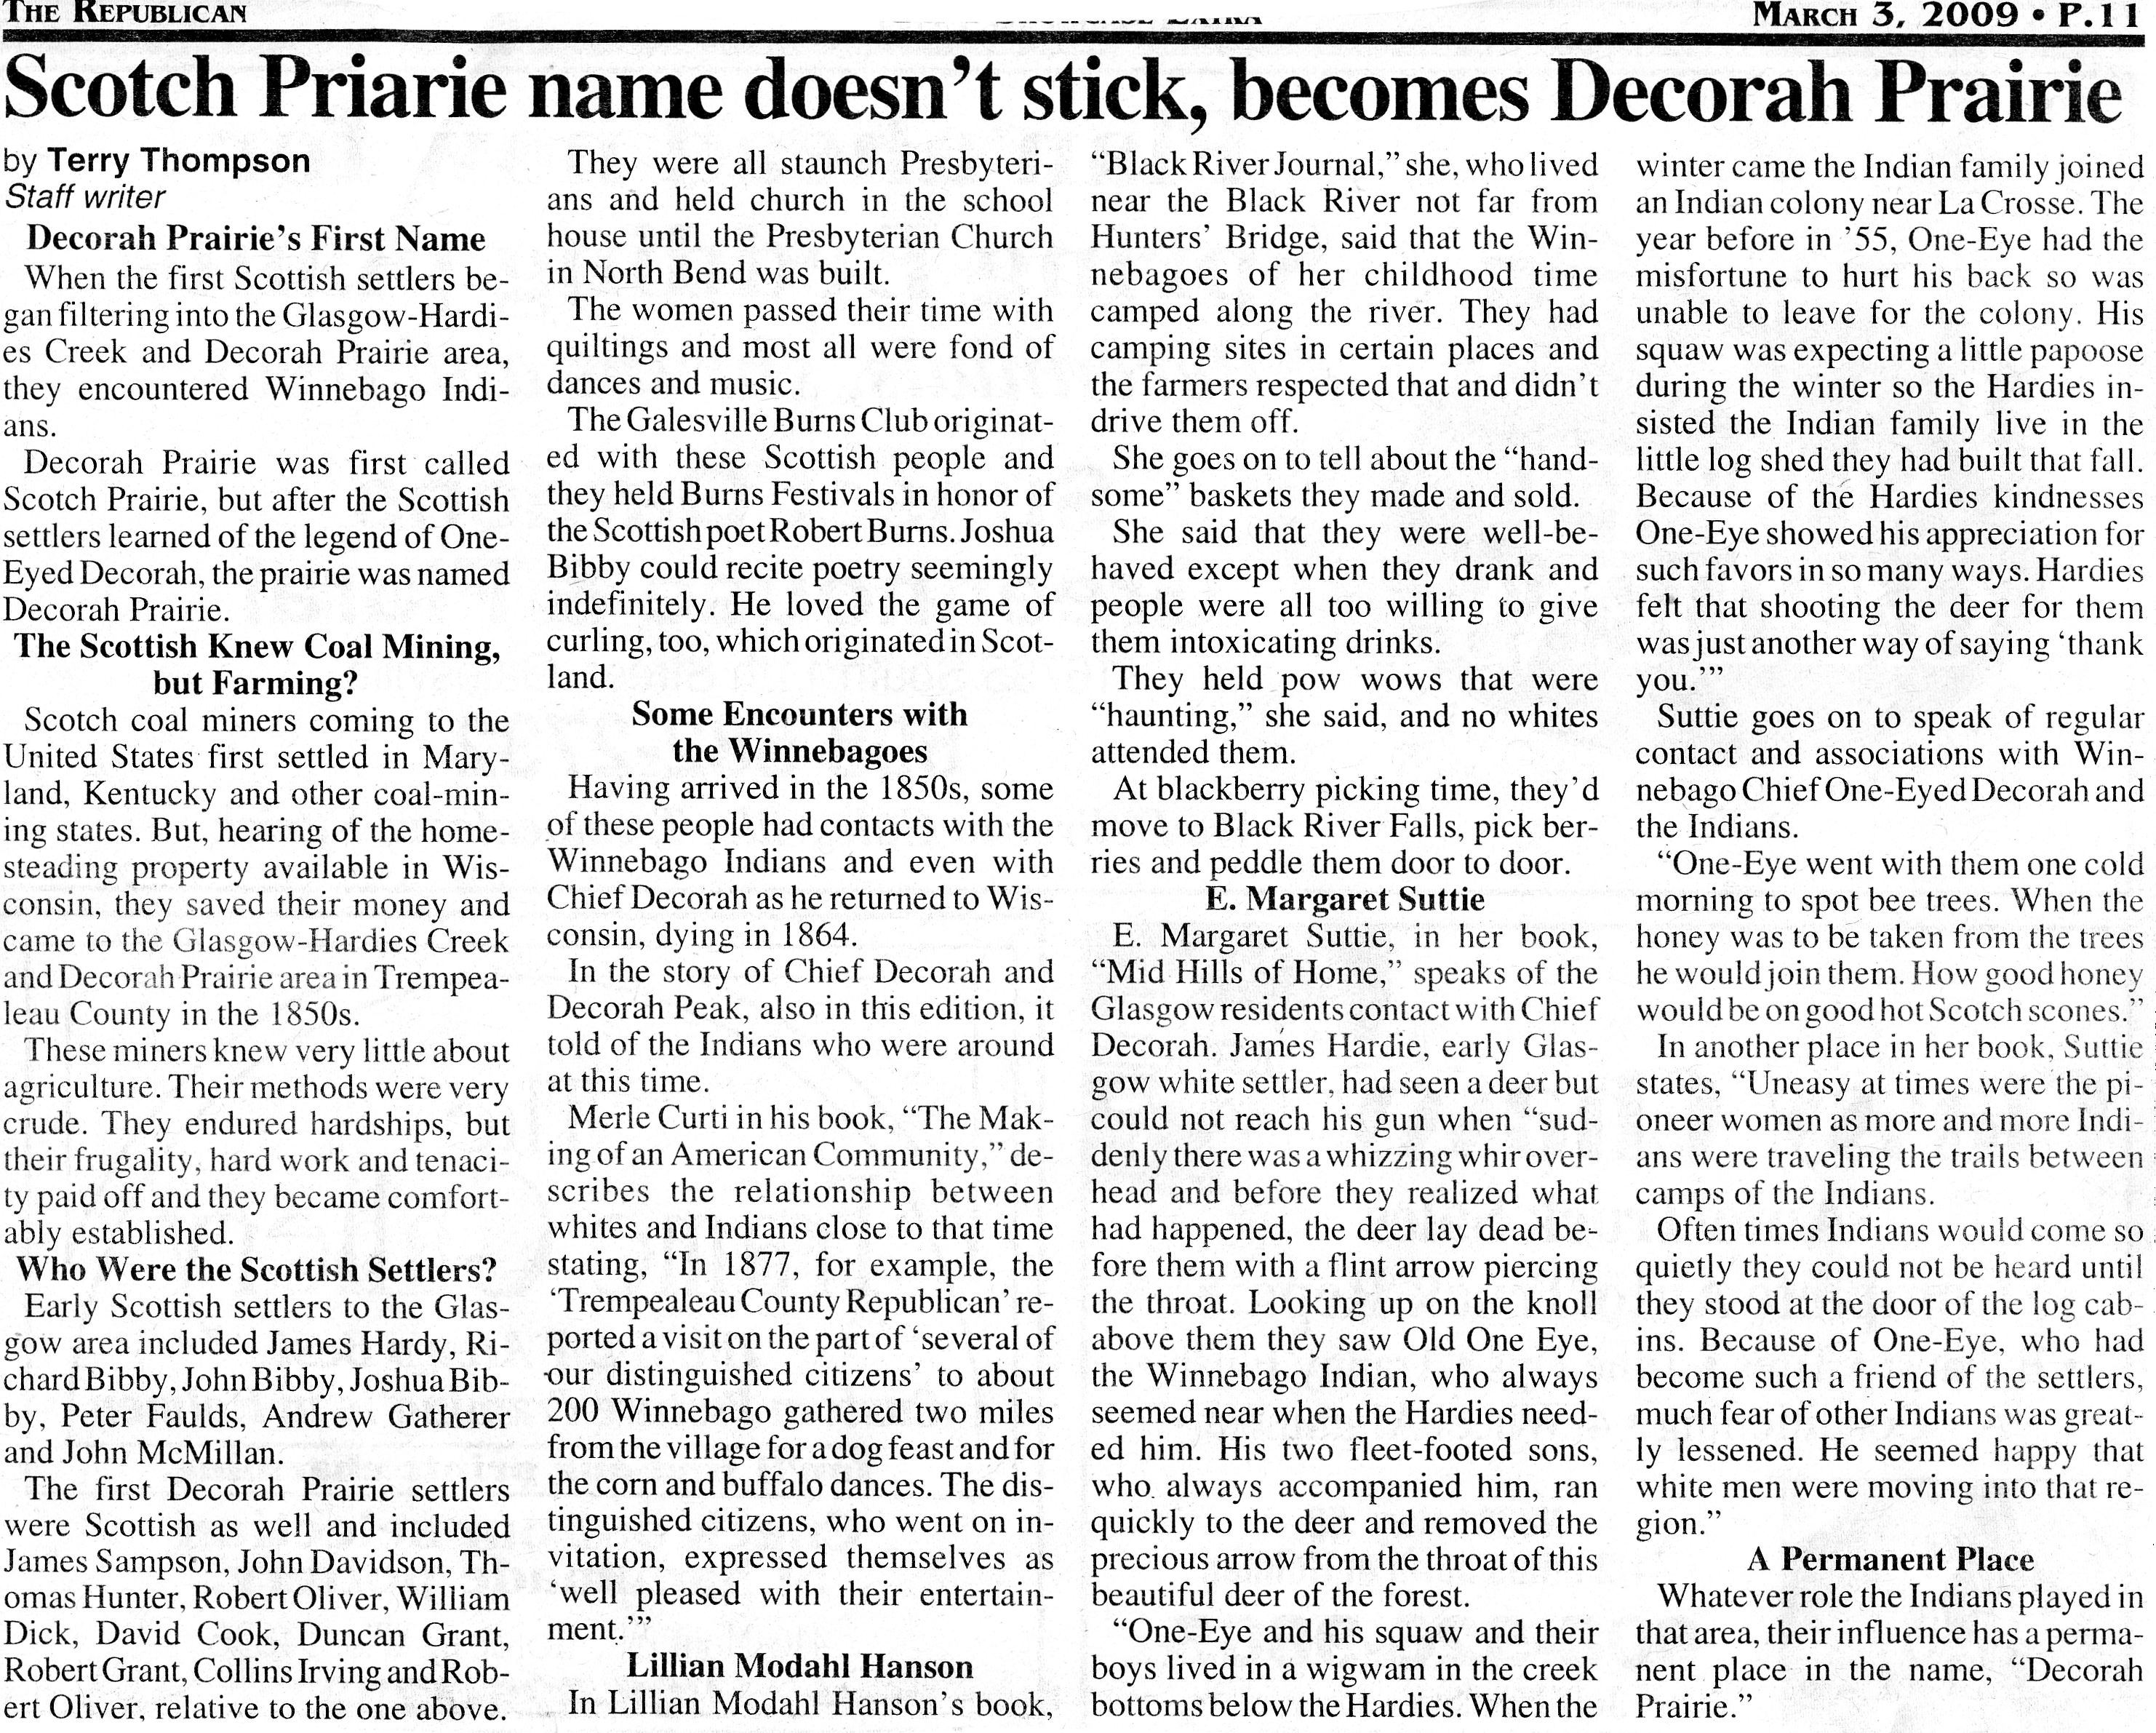 Decorah Prairie